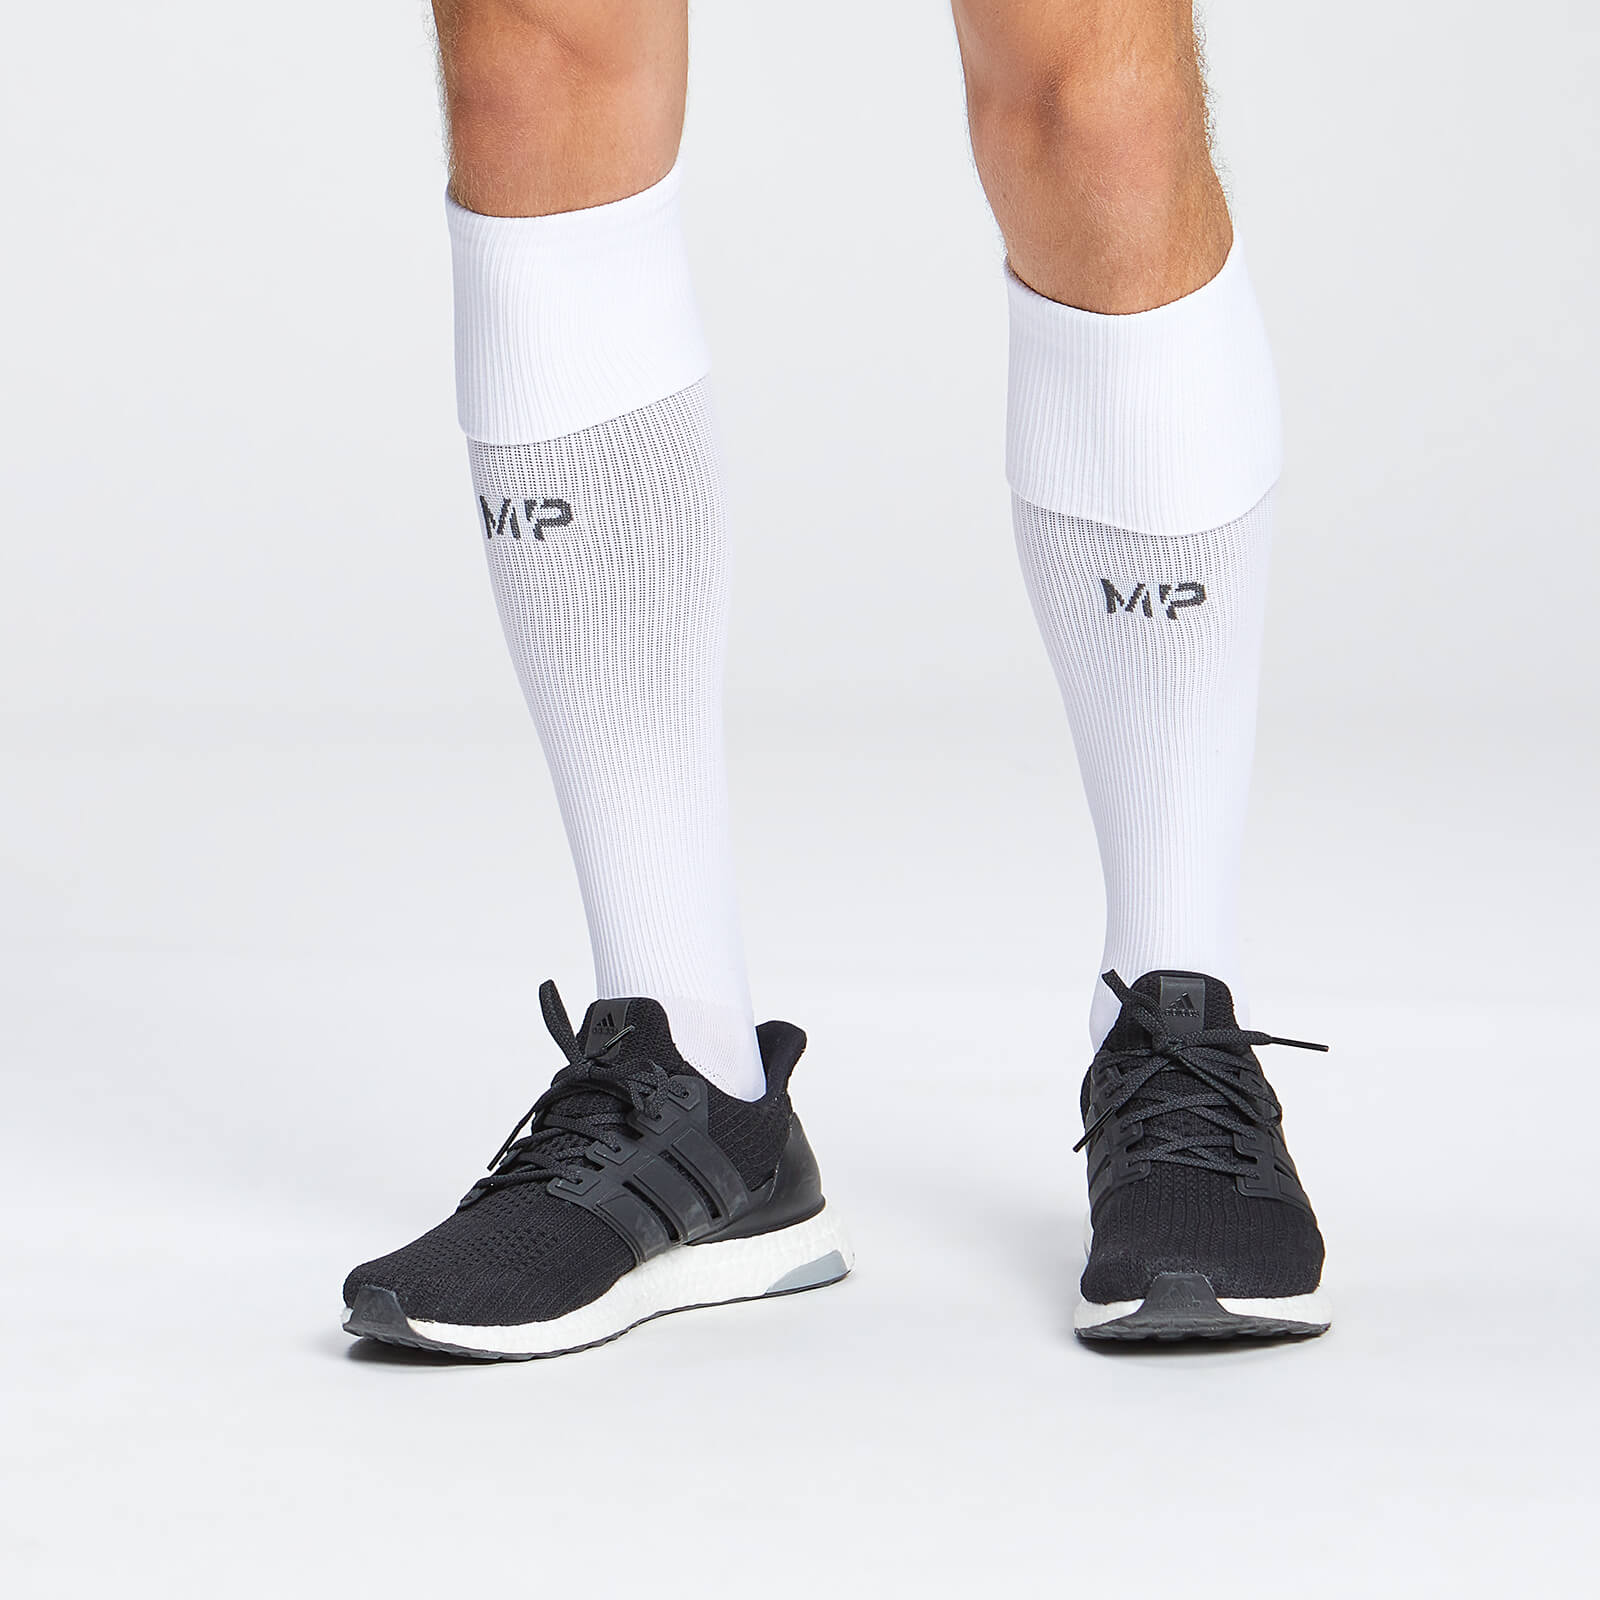 Chaussettes de football pleine longueur MP – Blanc - UK 7-9